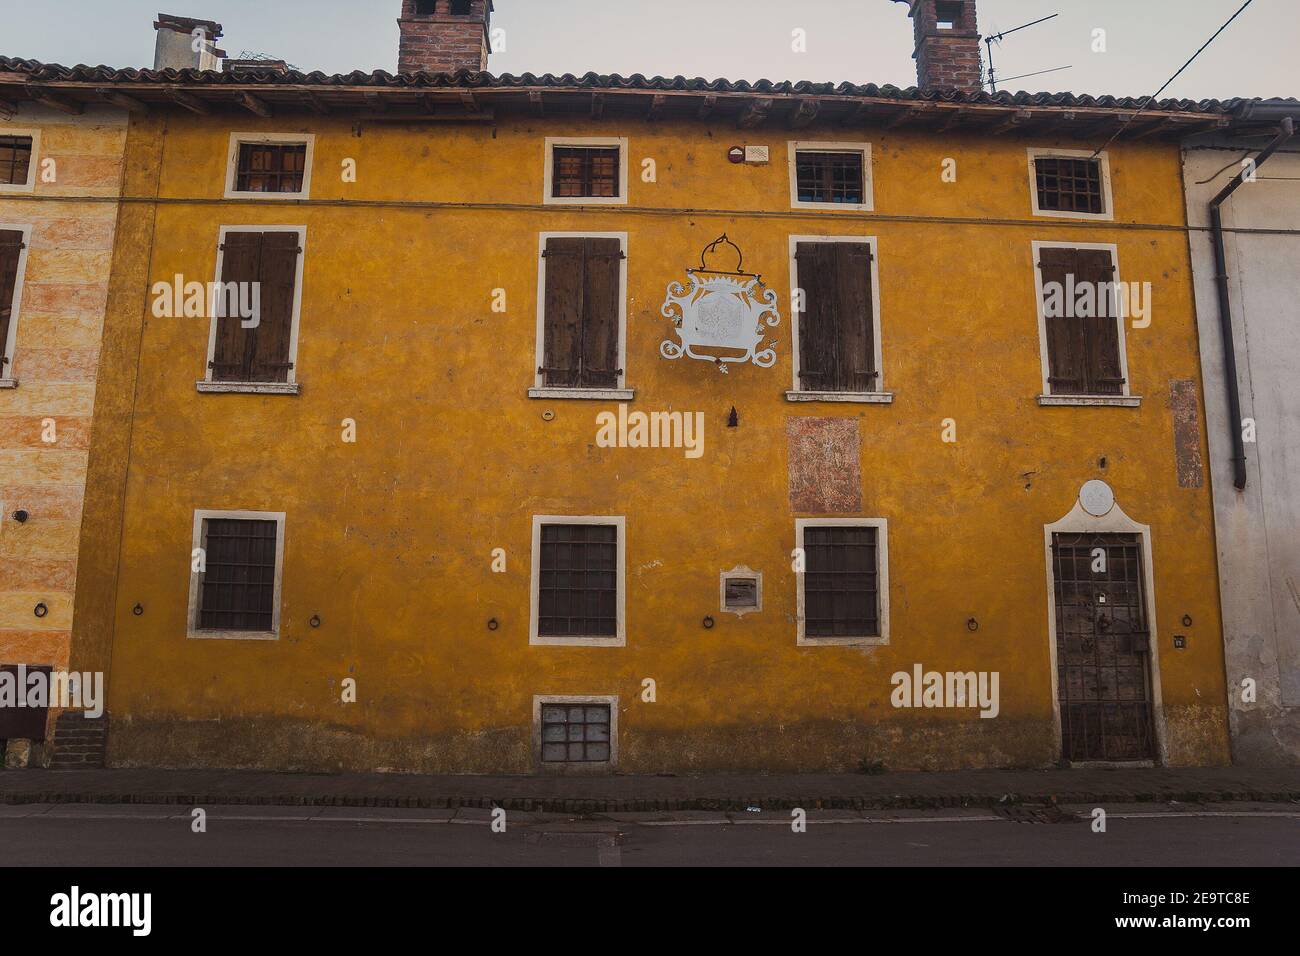 Magnifica architettura italiana in un piccolo villaggio a nord del paese Foto Stock